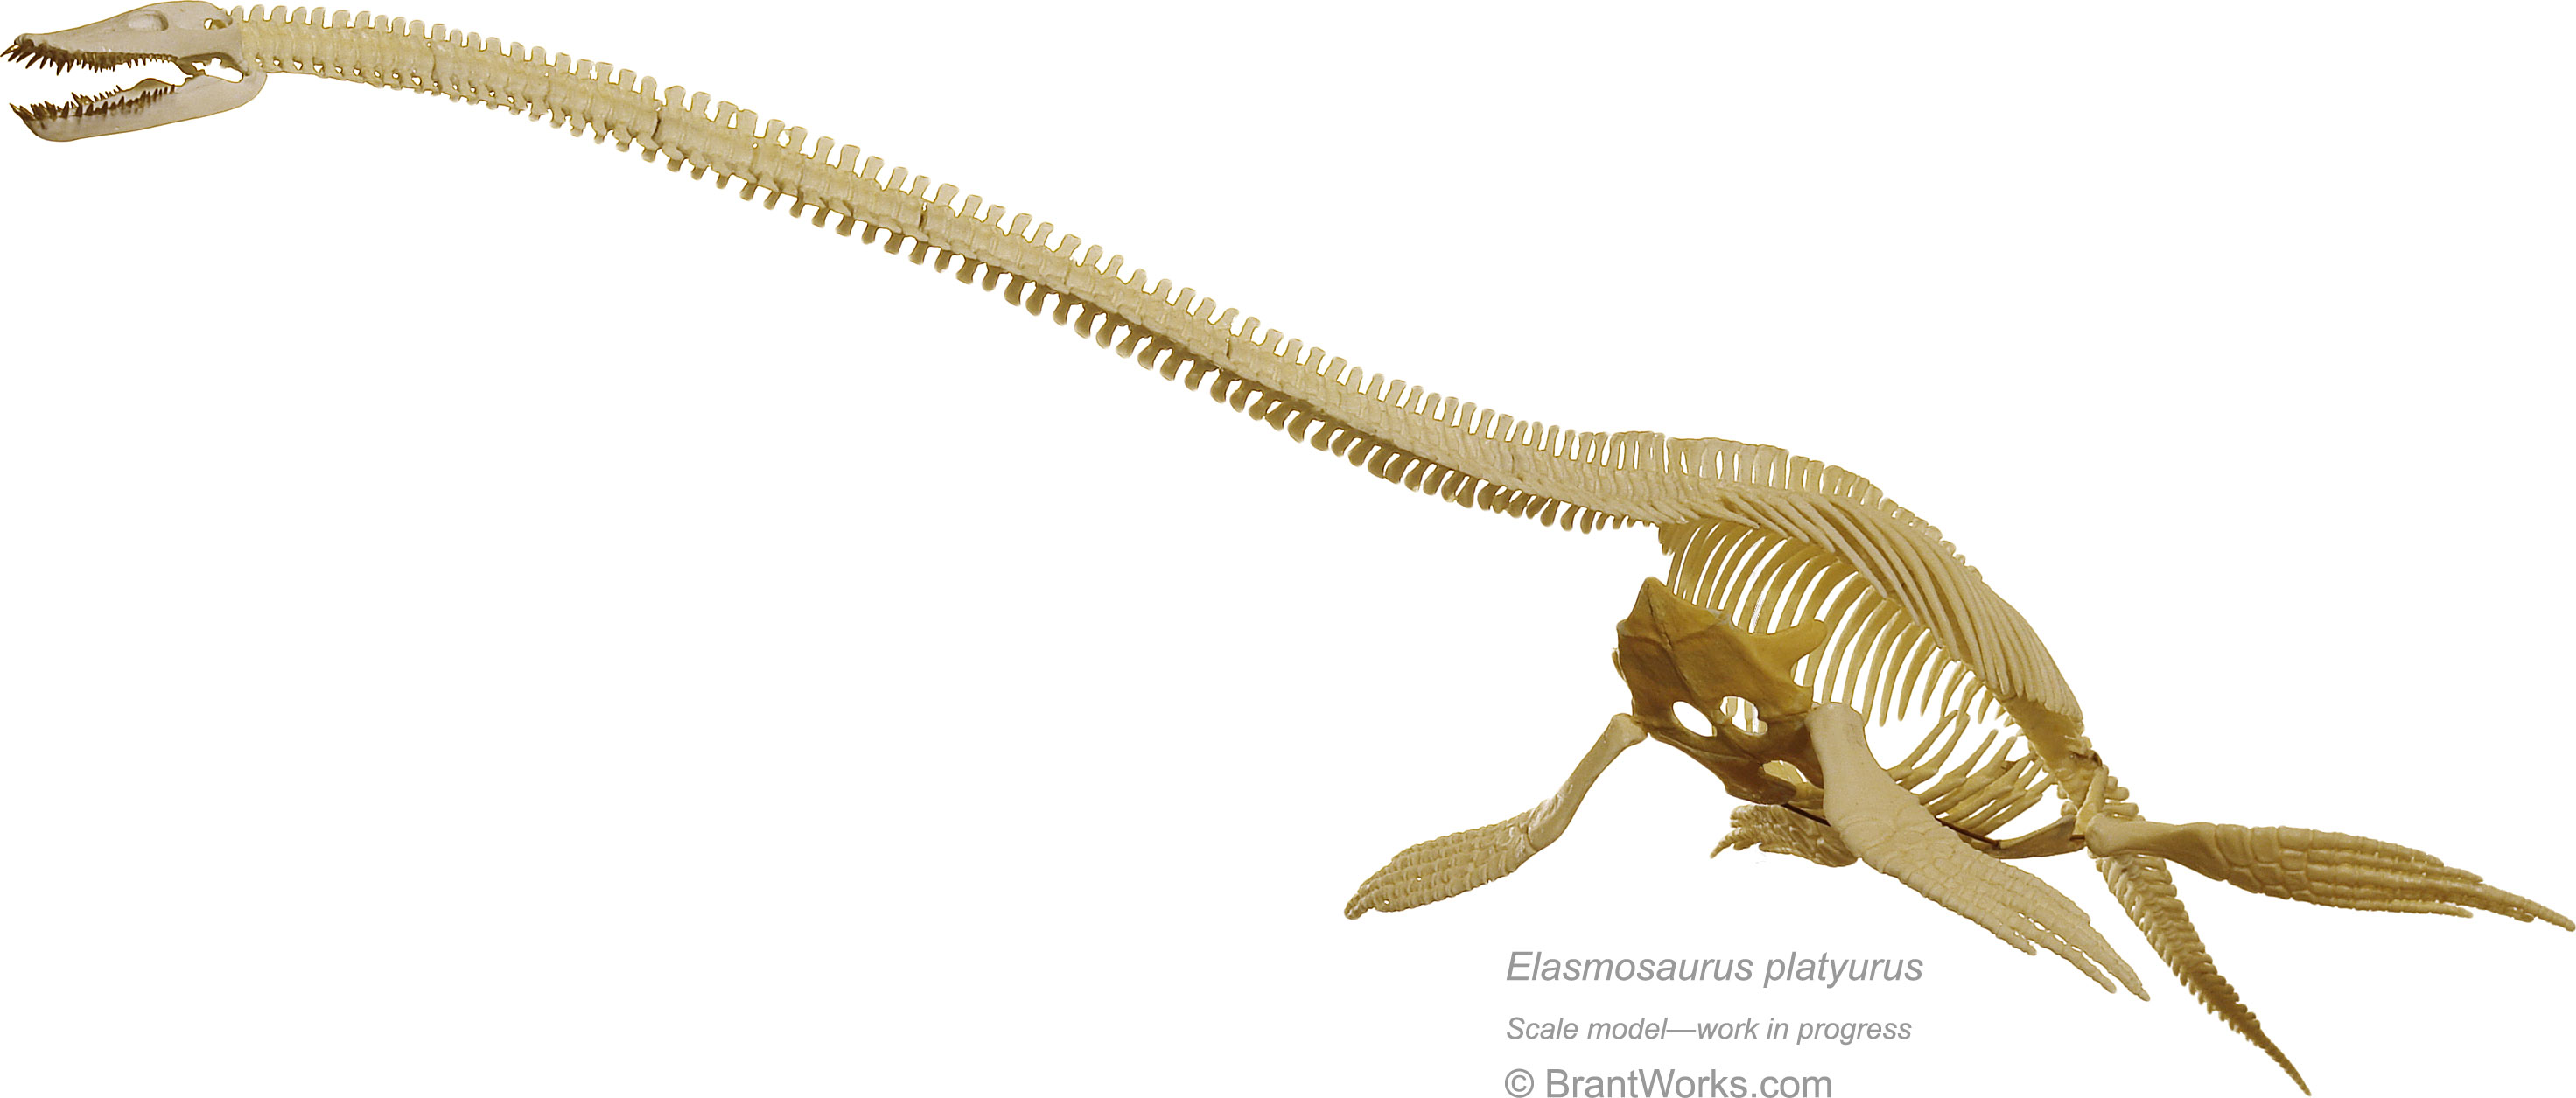 BrantWorks-Elasmosaurus-progress2-Oct2011-full.jpg